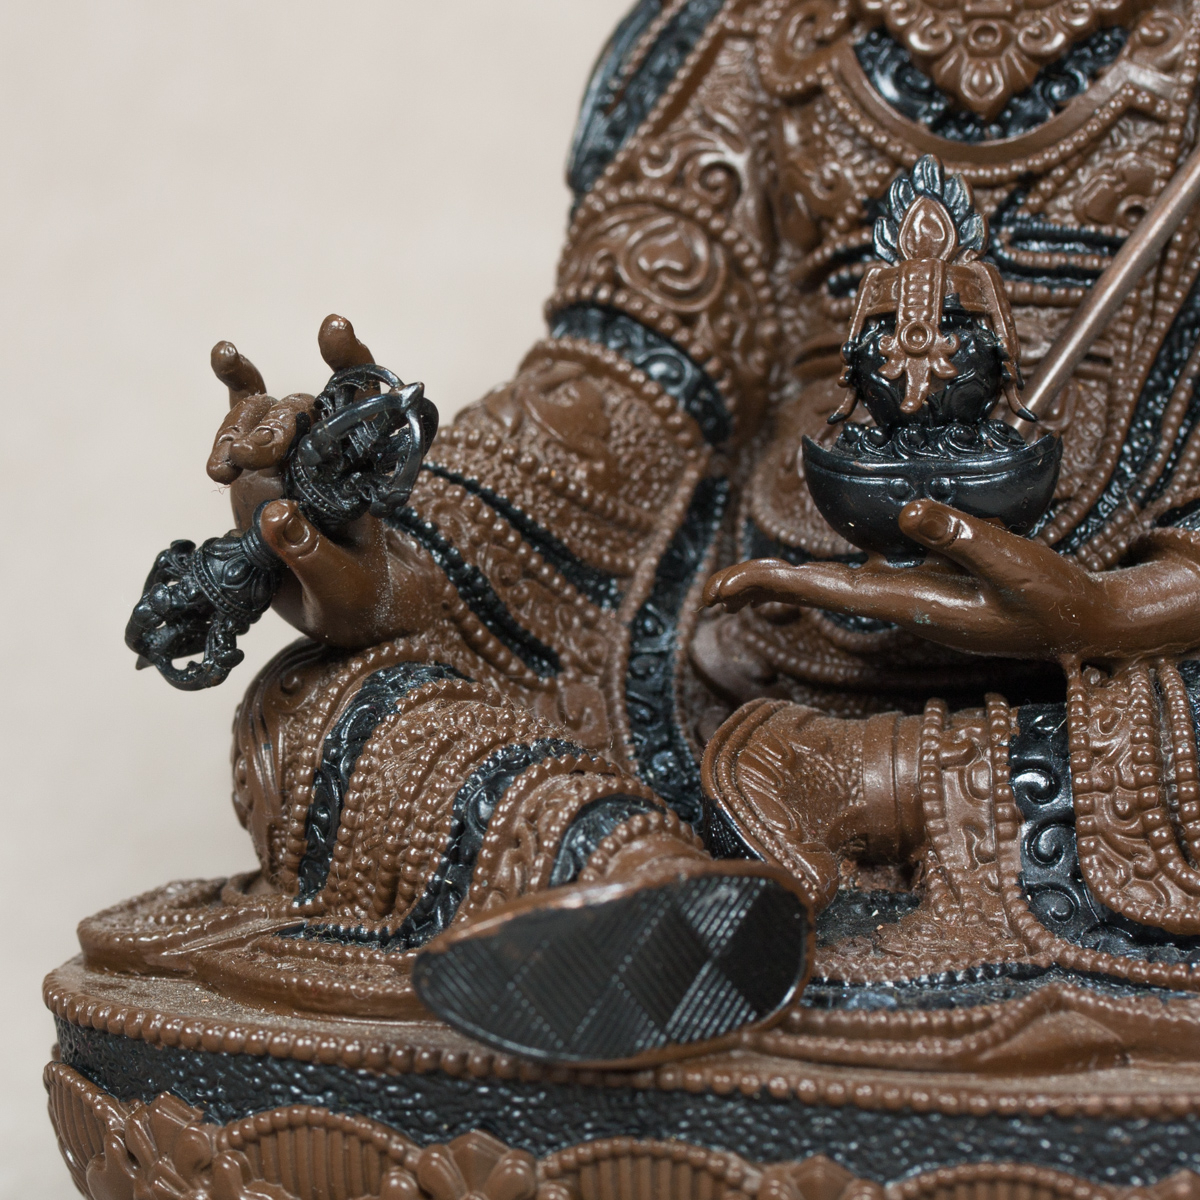 Статуэтка Падмасамбхавы, 21 см